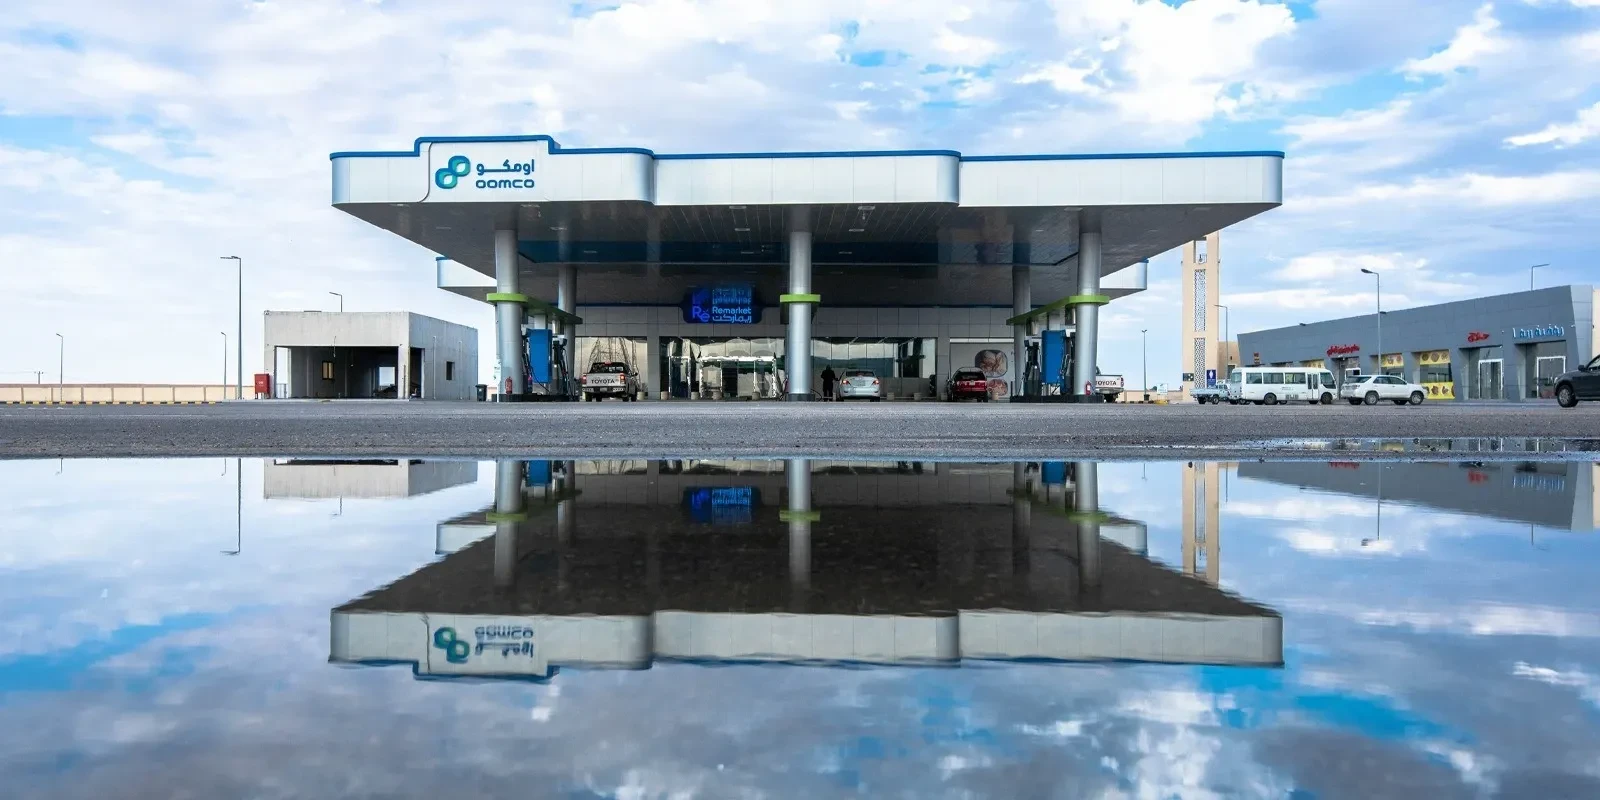 شركة النفط العُمانية للتسويق تفتتح سابع محطات خدماتها بالمملكة العربية السعودية في مكة المكرمة